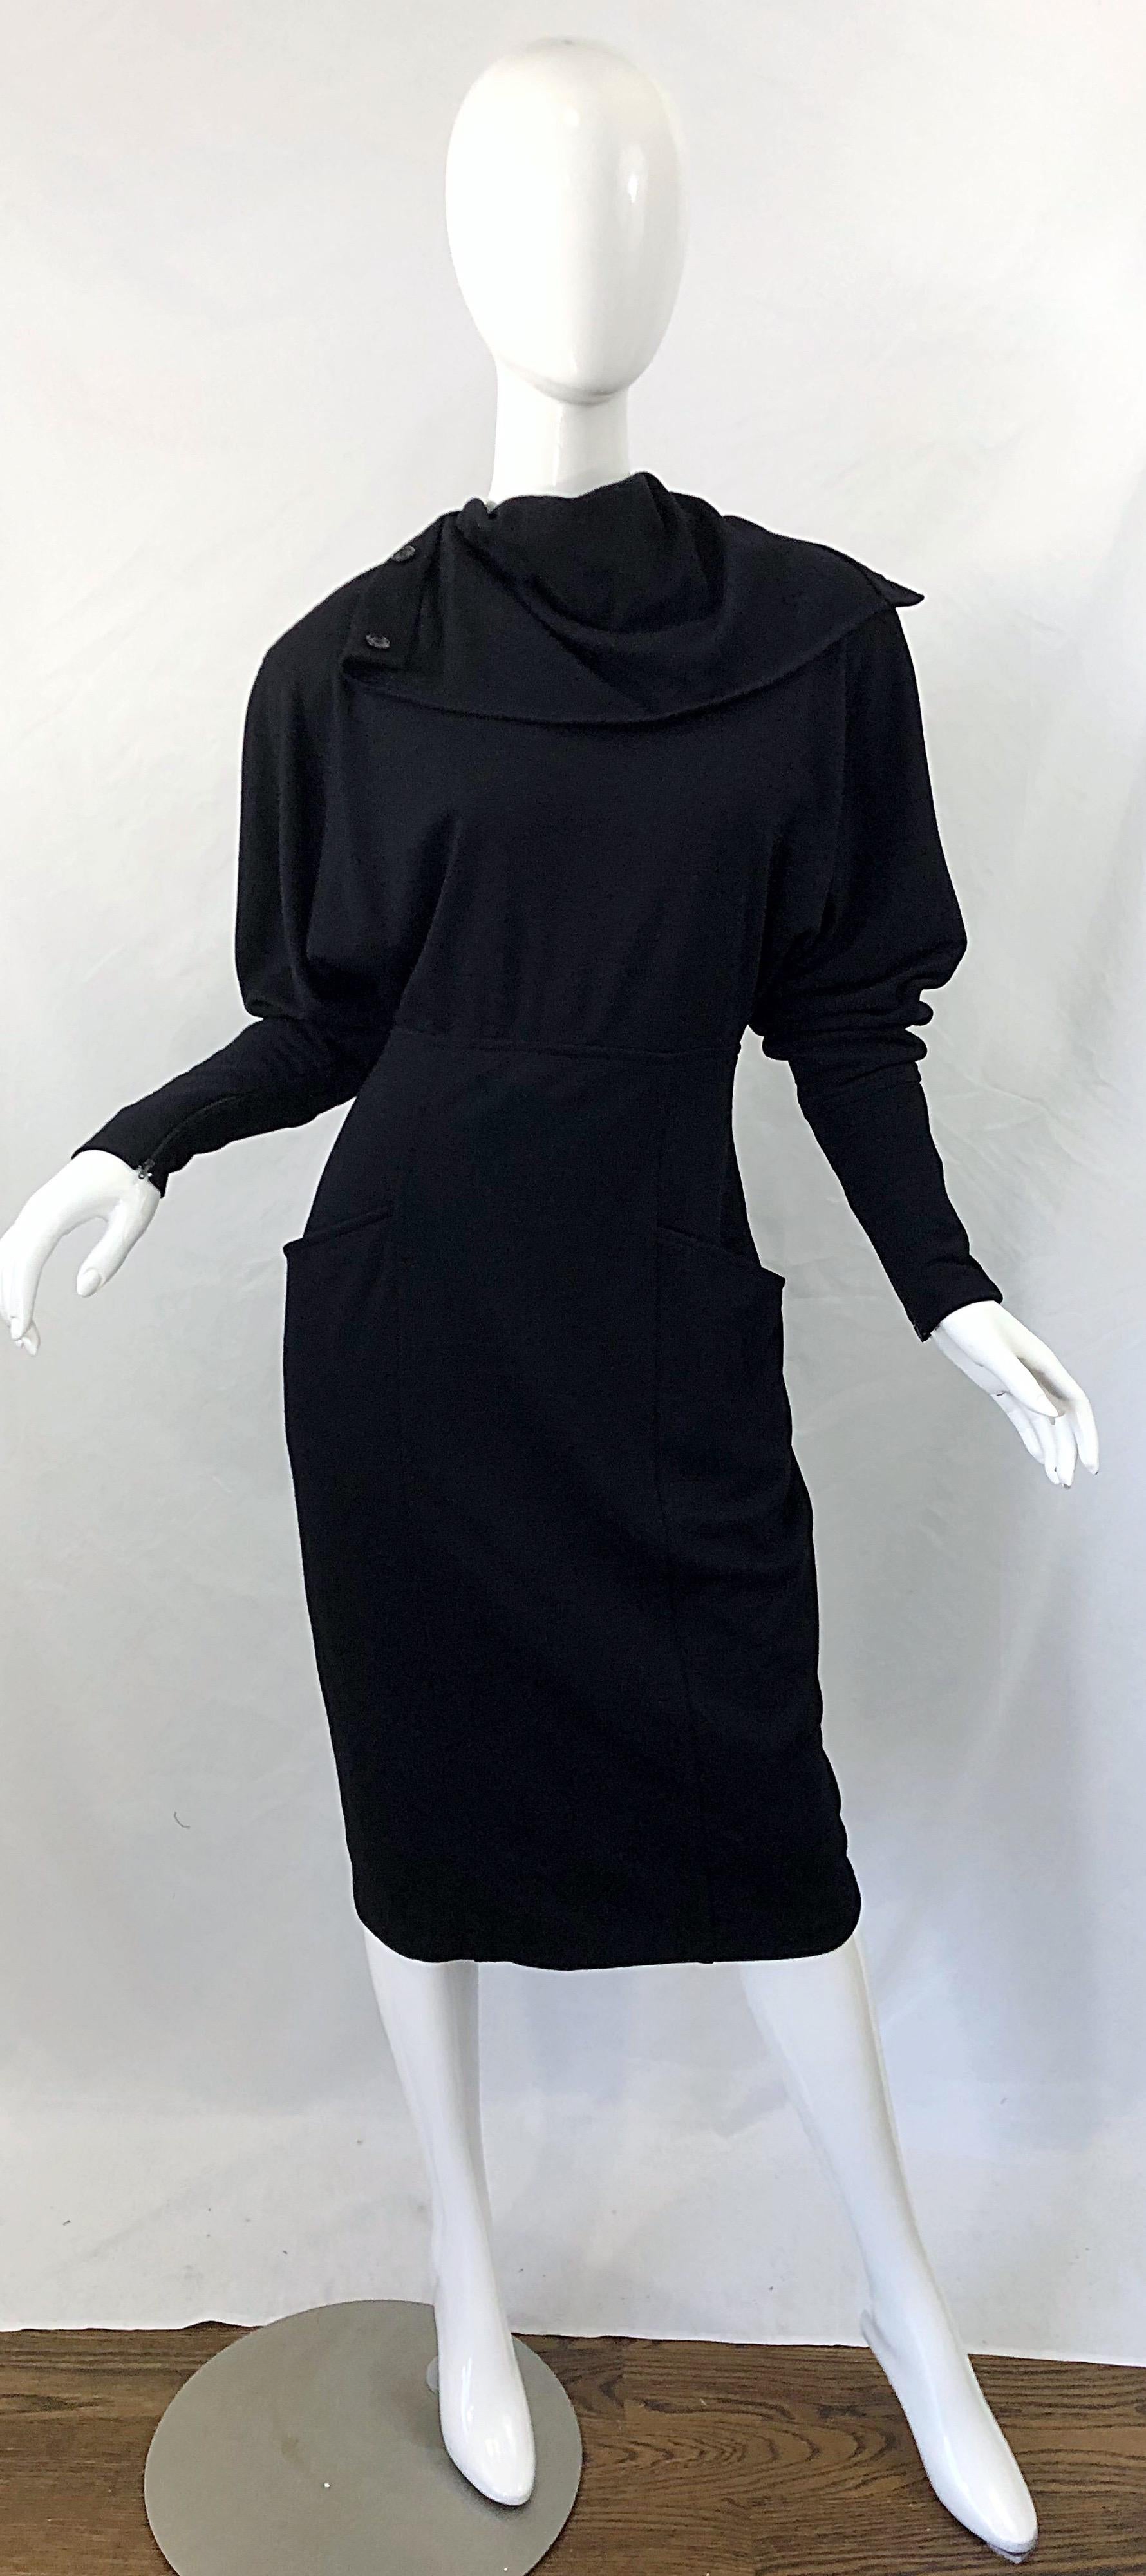 Women's Gucci 1980s Avant Garde Black Size 42 Wool Vintage 80s Turtleneck Sweater Dress For Sale